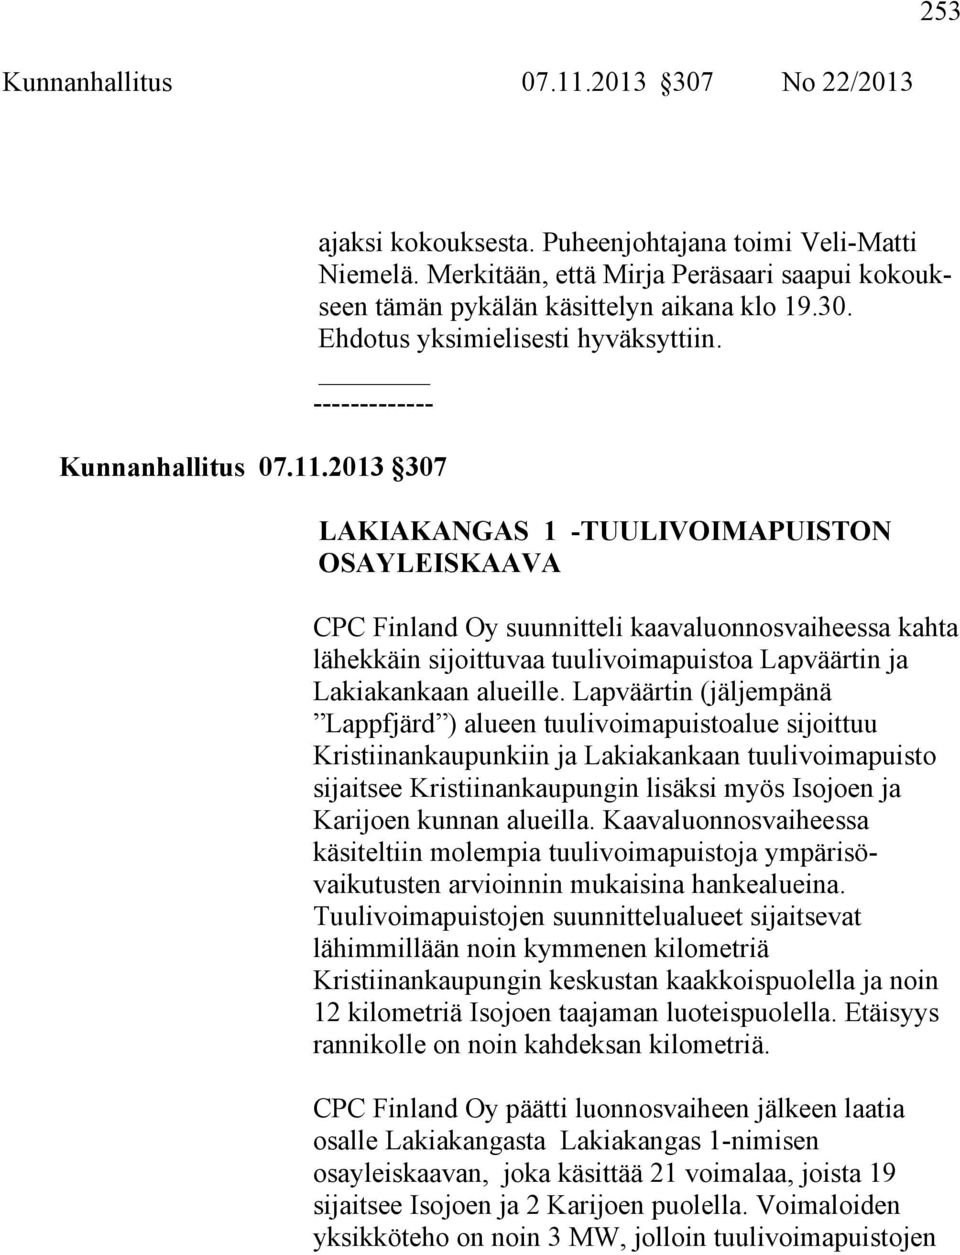 ------------- LAKIAKANGAS 1 -TUULIVOIMAPUISTON OSAYLEISKAAVA CPC Finland Oy suunnitteli kaavaluonnosvaiheessa kahta lähekkäin sijoittuvaa tuulivoimapuistoa Lapväärtin ja Lakiakankaan alueille.